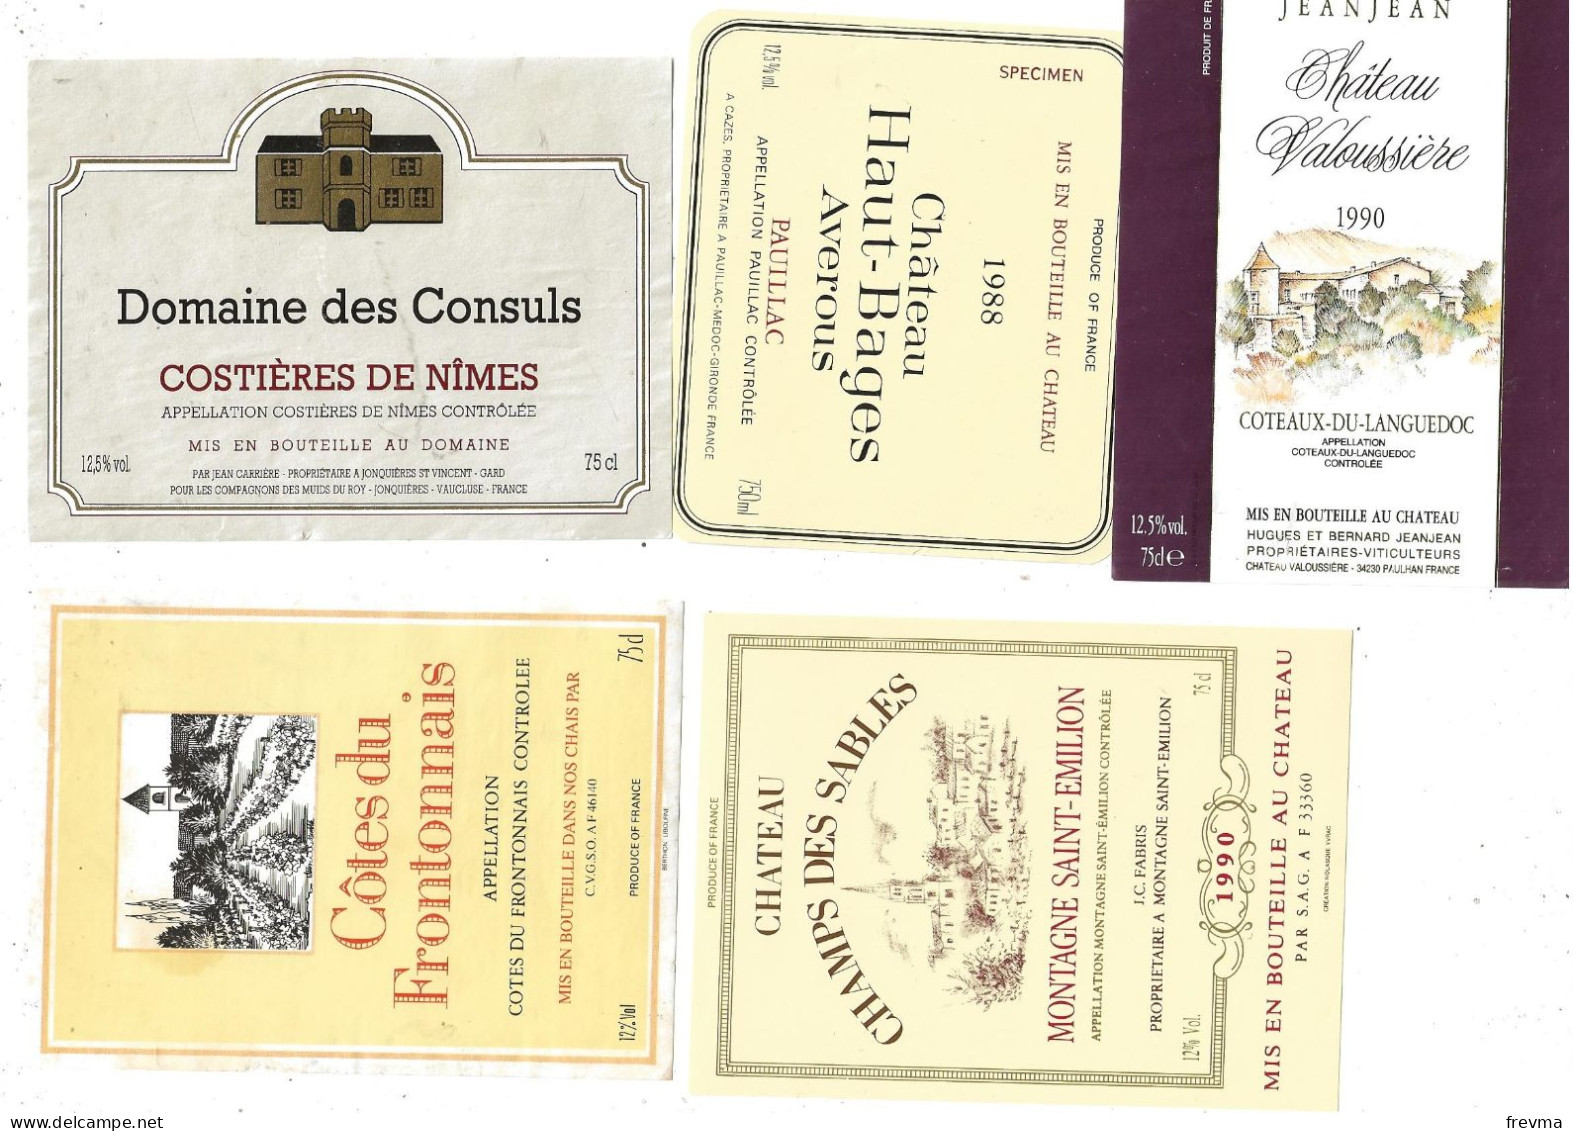 Differentes etiquettes de vins